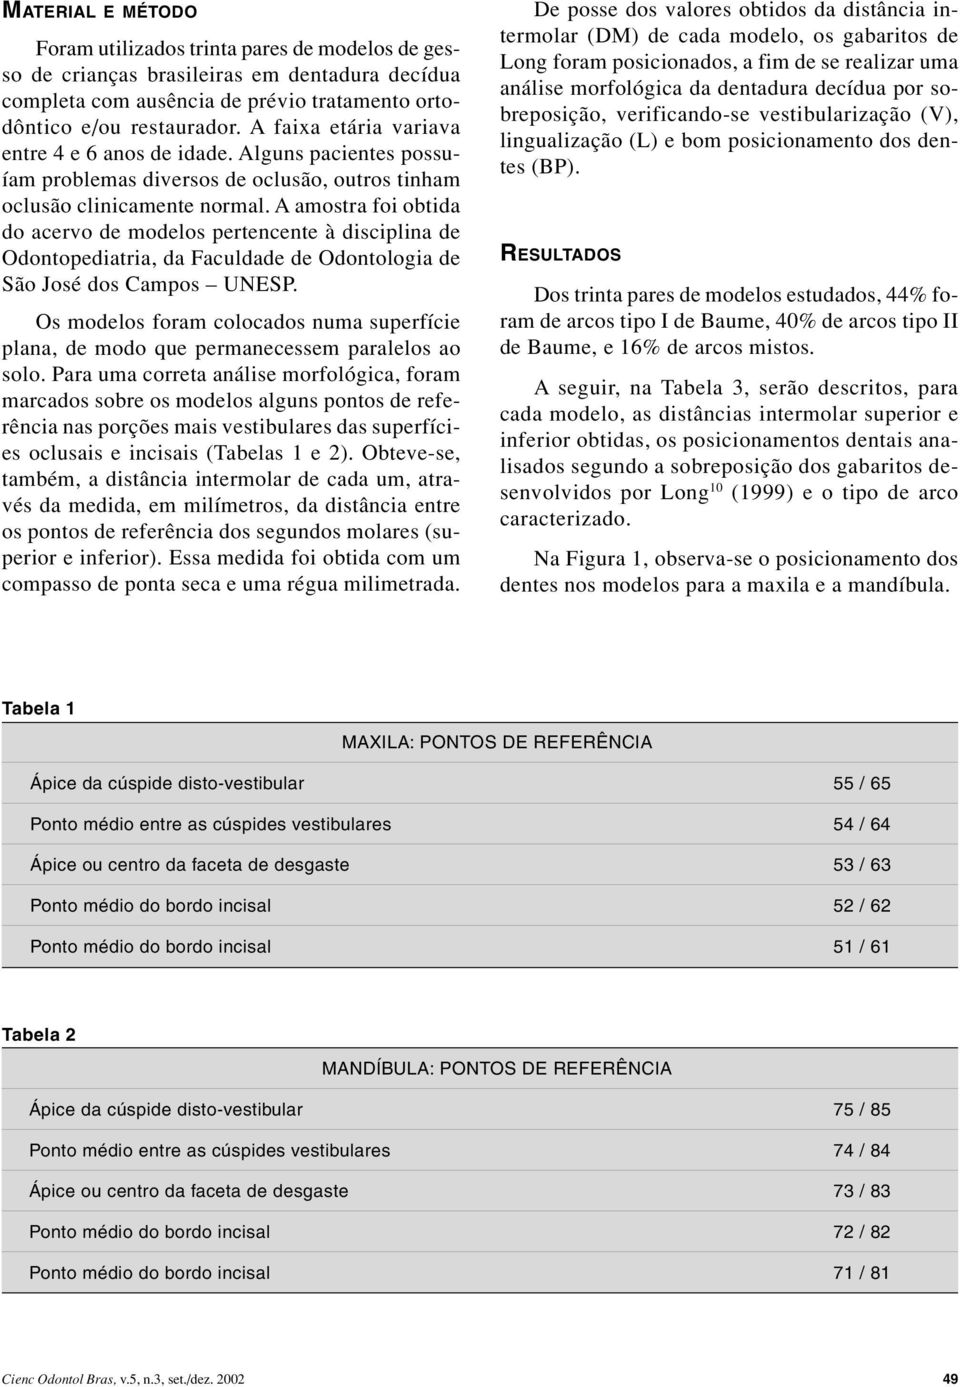 A amostra foi obtida do acervo de modelos pertencente à disciplina de Odontopediatria, da Faculdade de Odontologia de São José dos Campos UNESP.